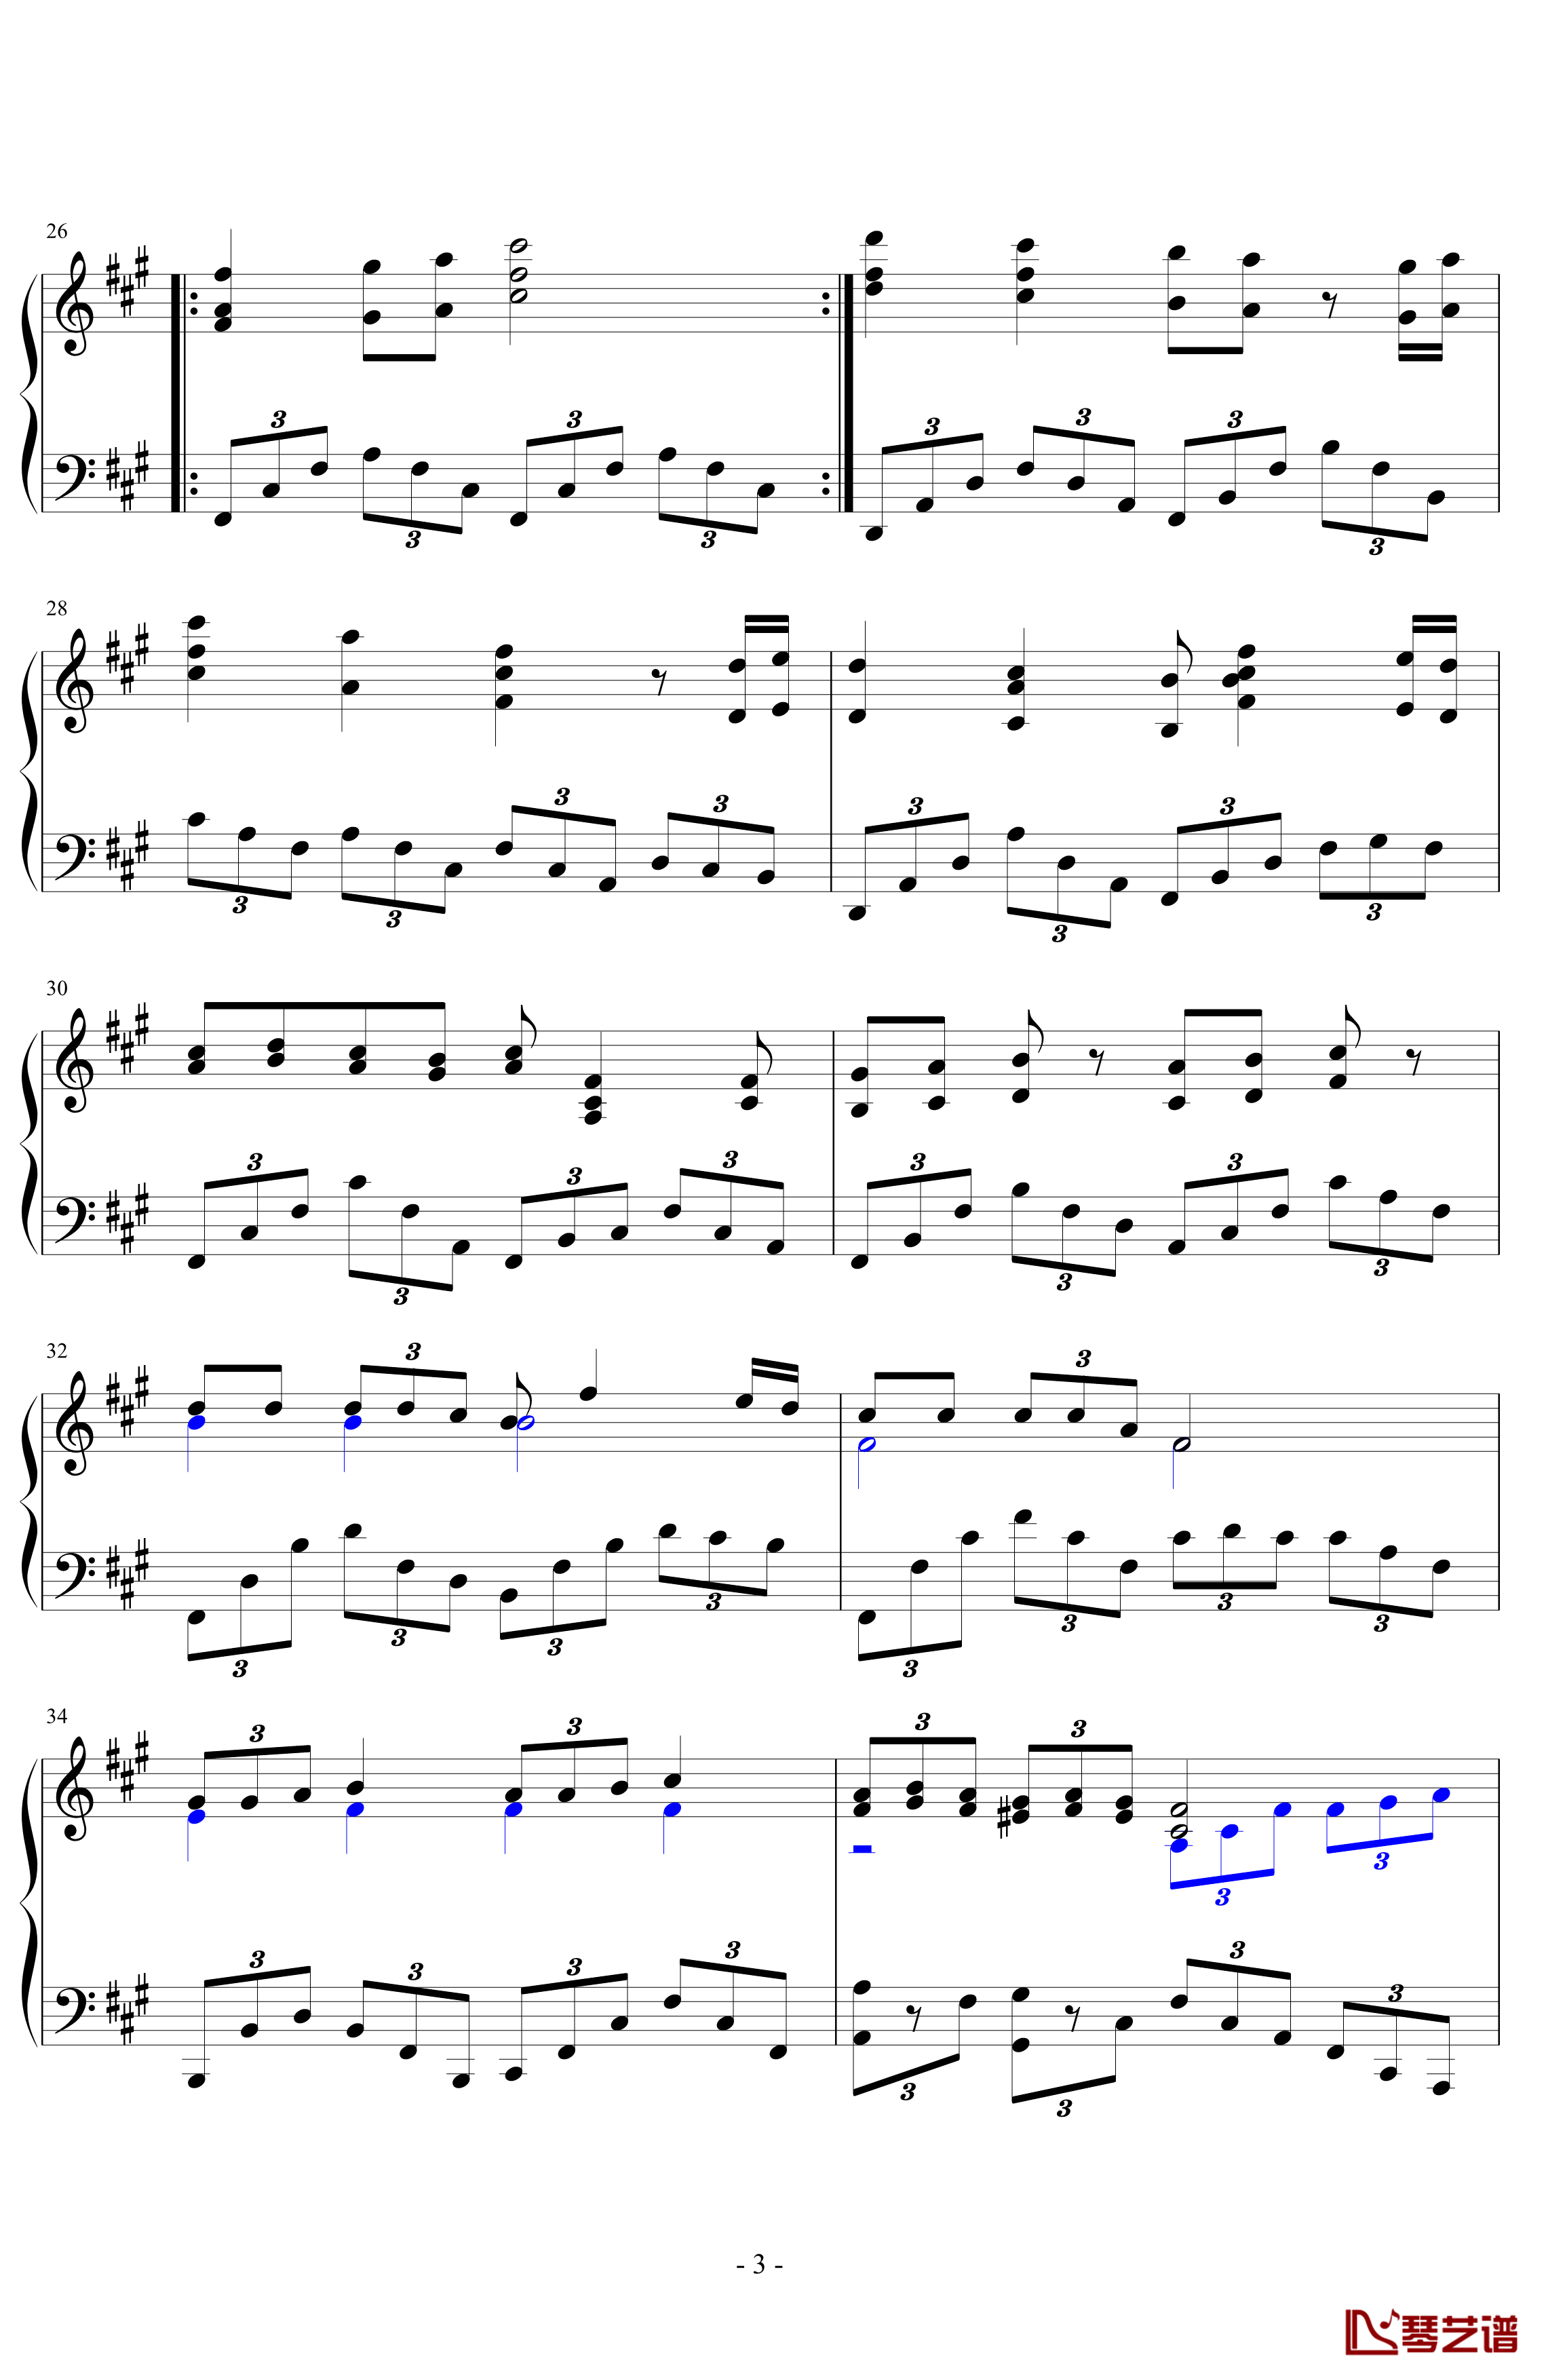 无题钢琴谱-PARROT1863